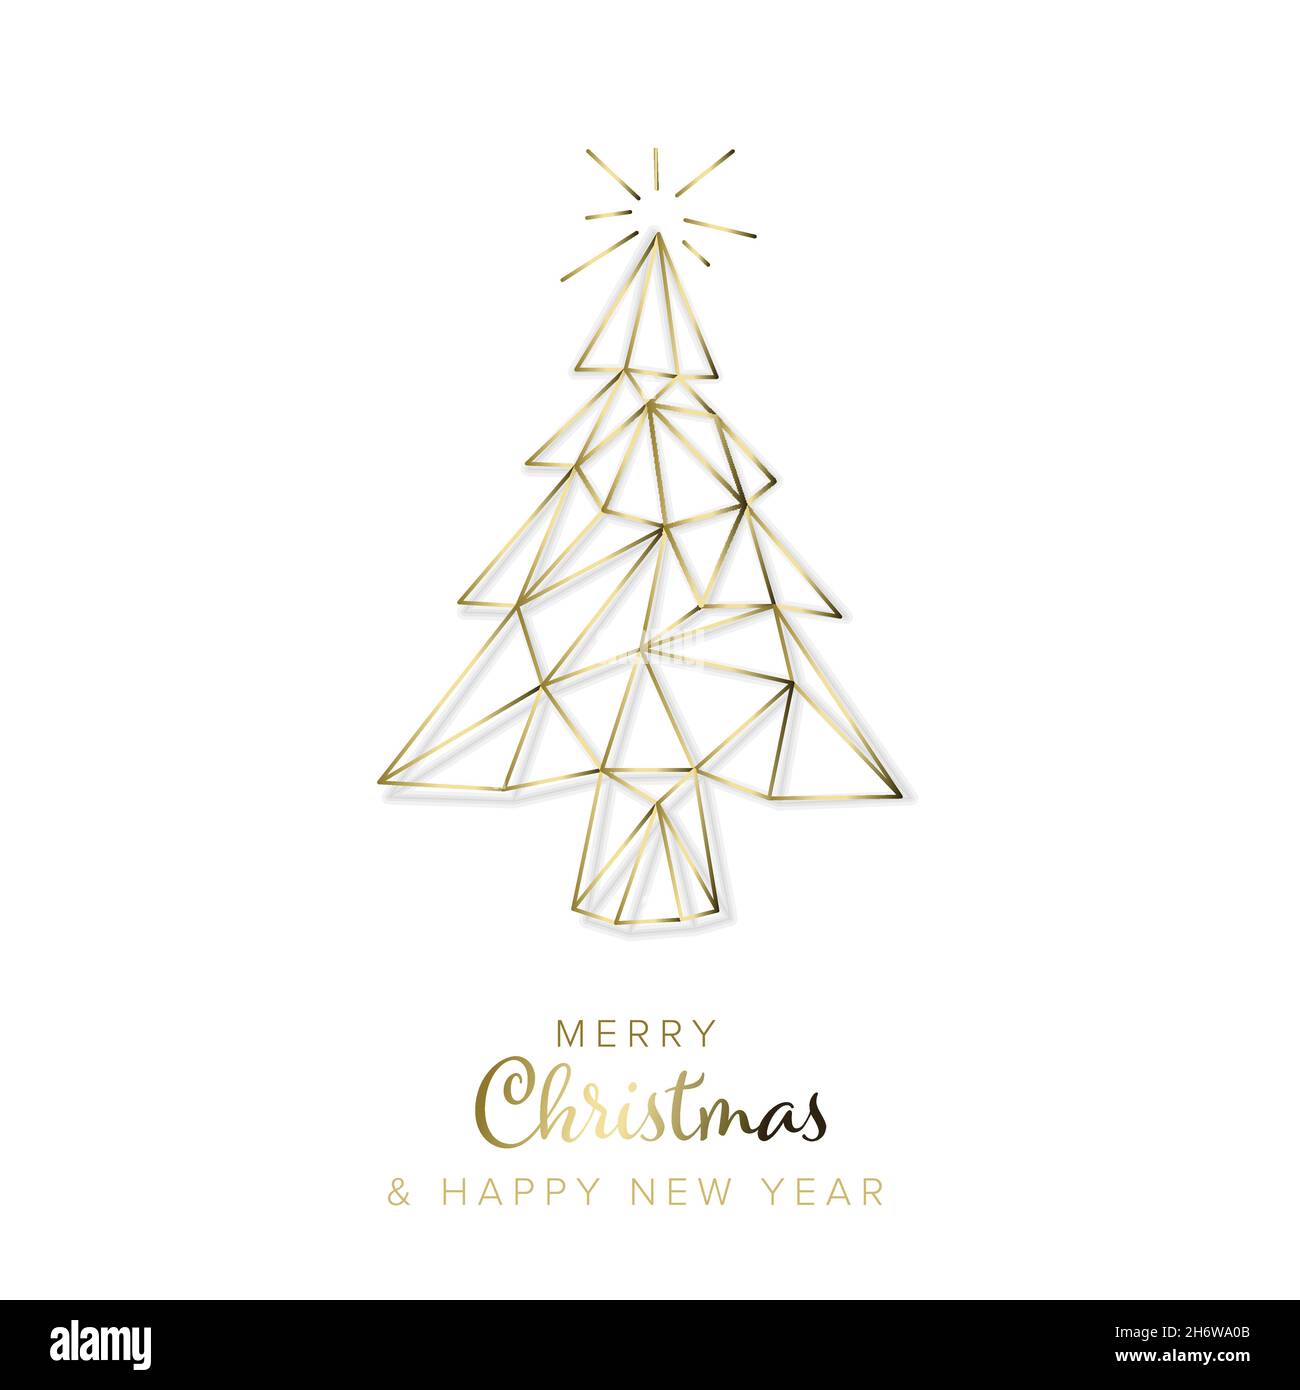 Vector moderno tarjeta de navidad de moda con geometría abstracta dorada árbol de navidad sobre un fondo blanco con sombra clara Ilustración del Vector